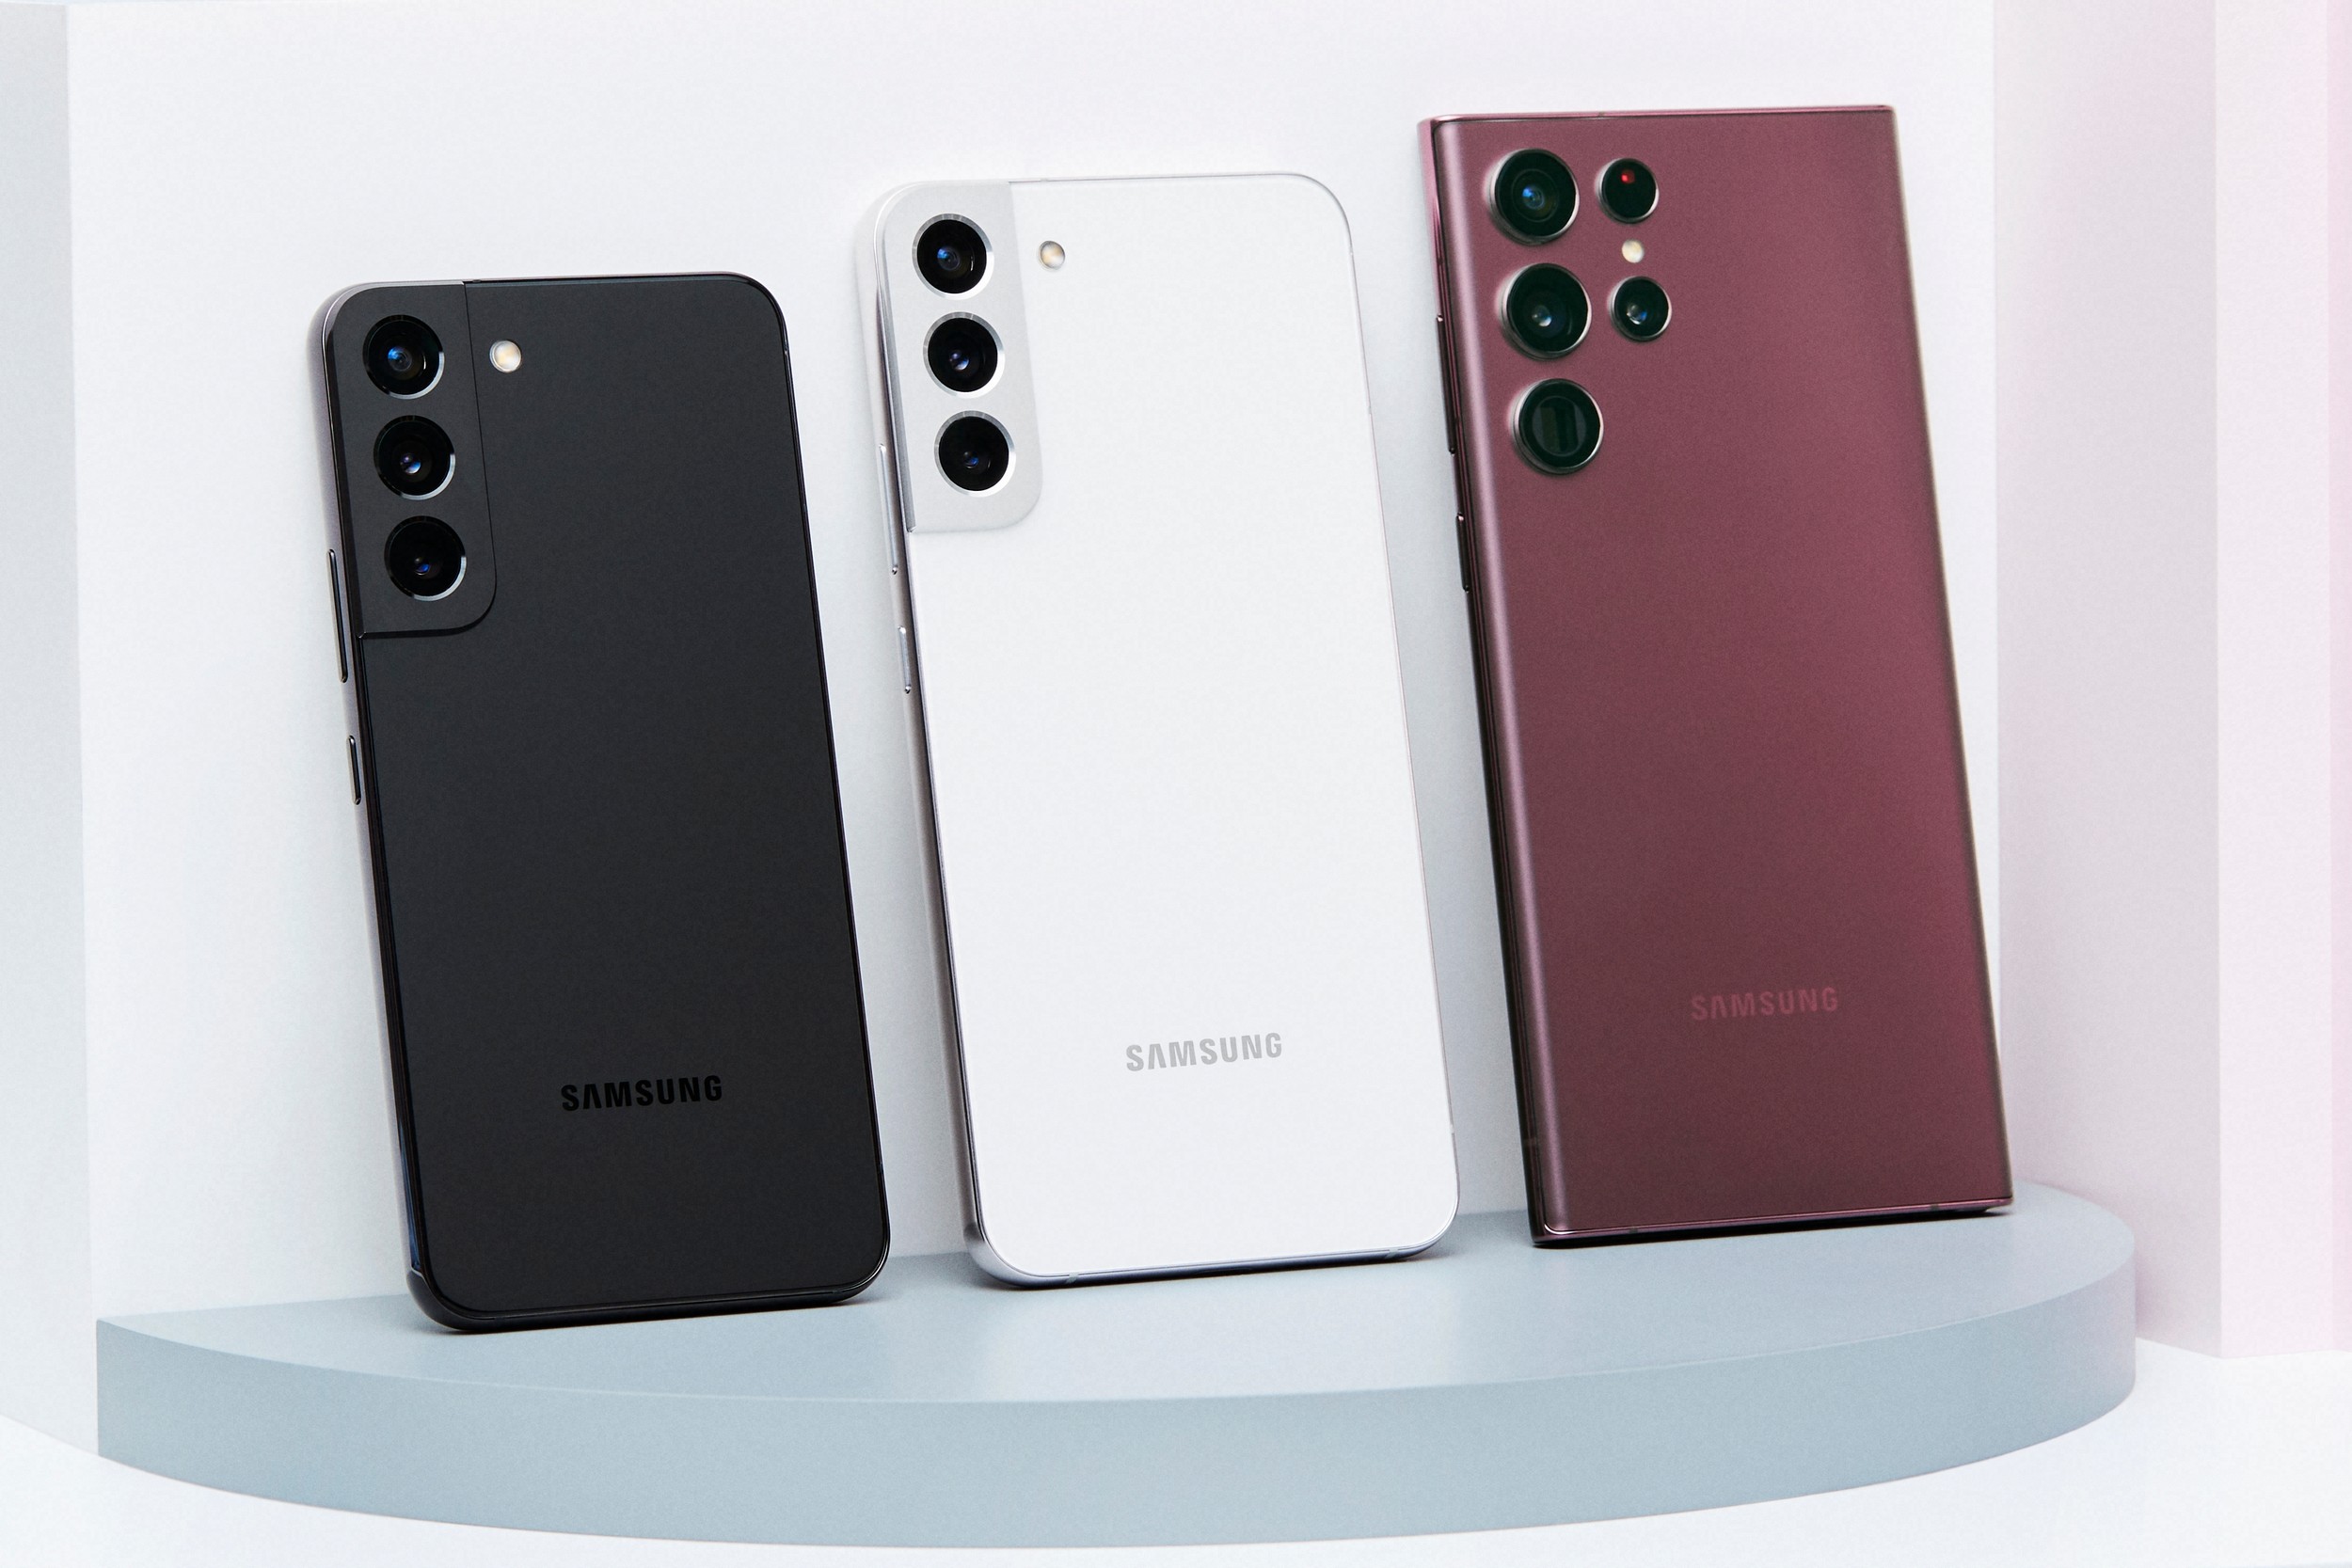 No cumplió las expectativas: las ventas de la serie Samsung Galaxy S22 se quedaron cortas en 30 millones de unidades, a pesar de que sólo falta un mes para el lanzamiento del Galaxy S23